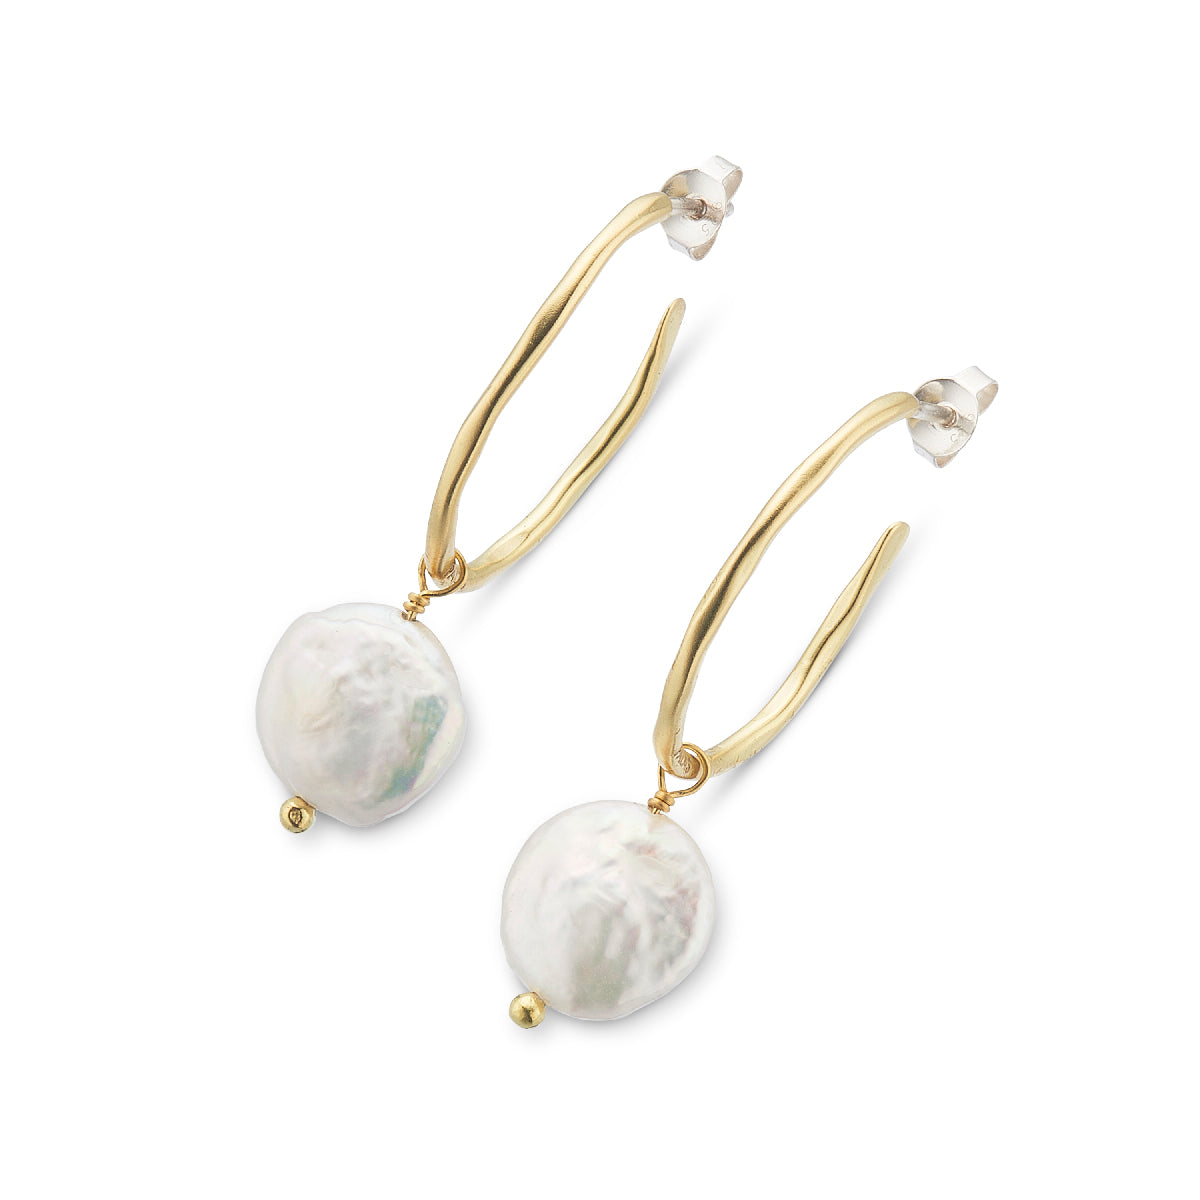 Prosperity pearl oval hoop earrings